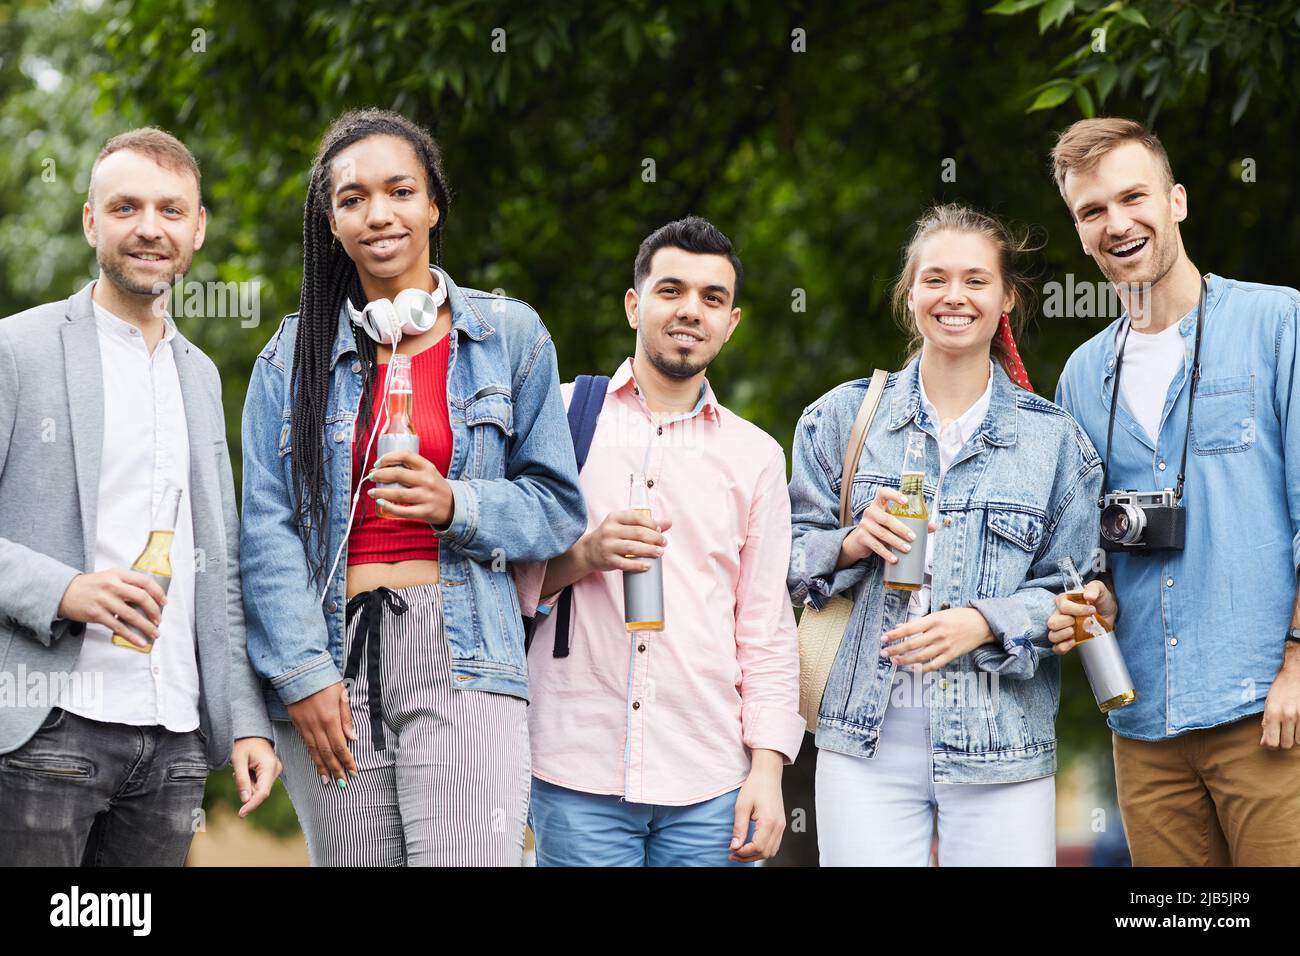 Gruppo di giovani amici multietnici positivi in abiti casual in fila e bere birra analcolica all'aperto Foto Stock